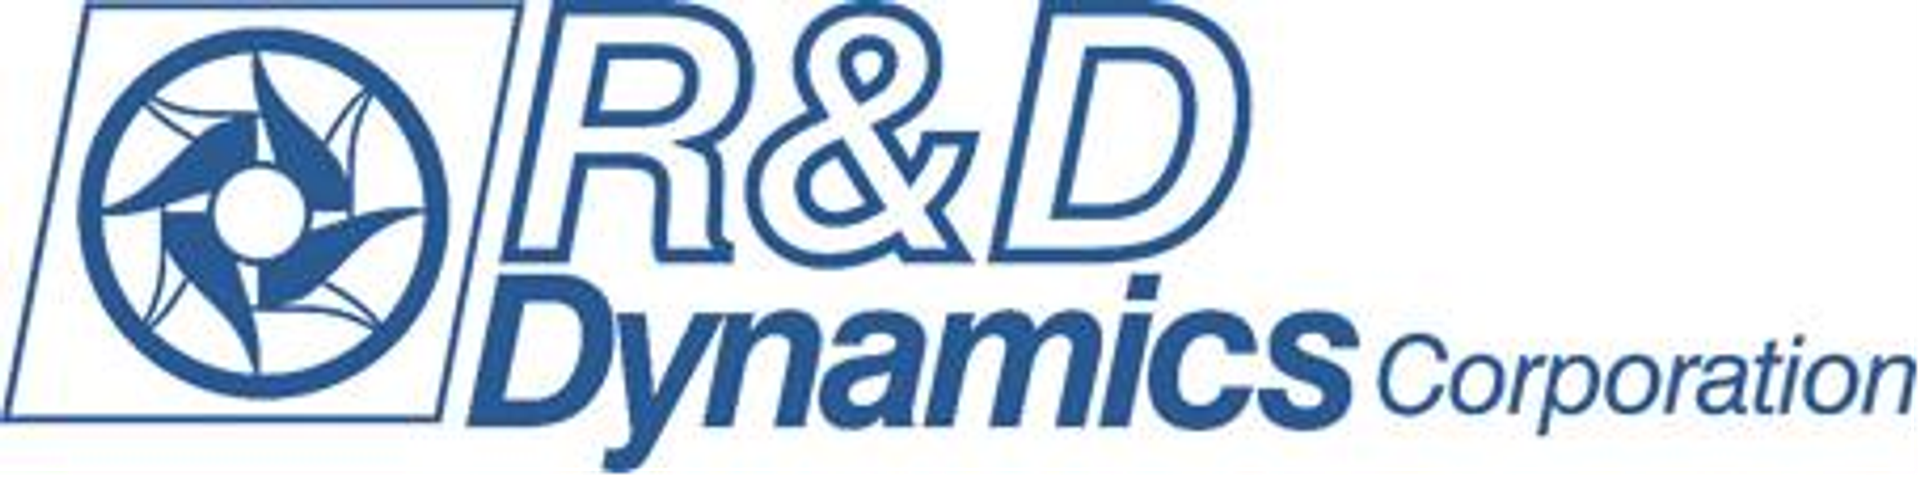 R & D Dynamics Corporation